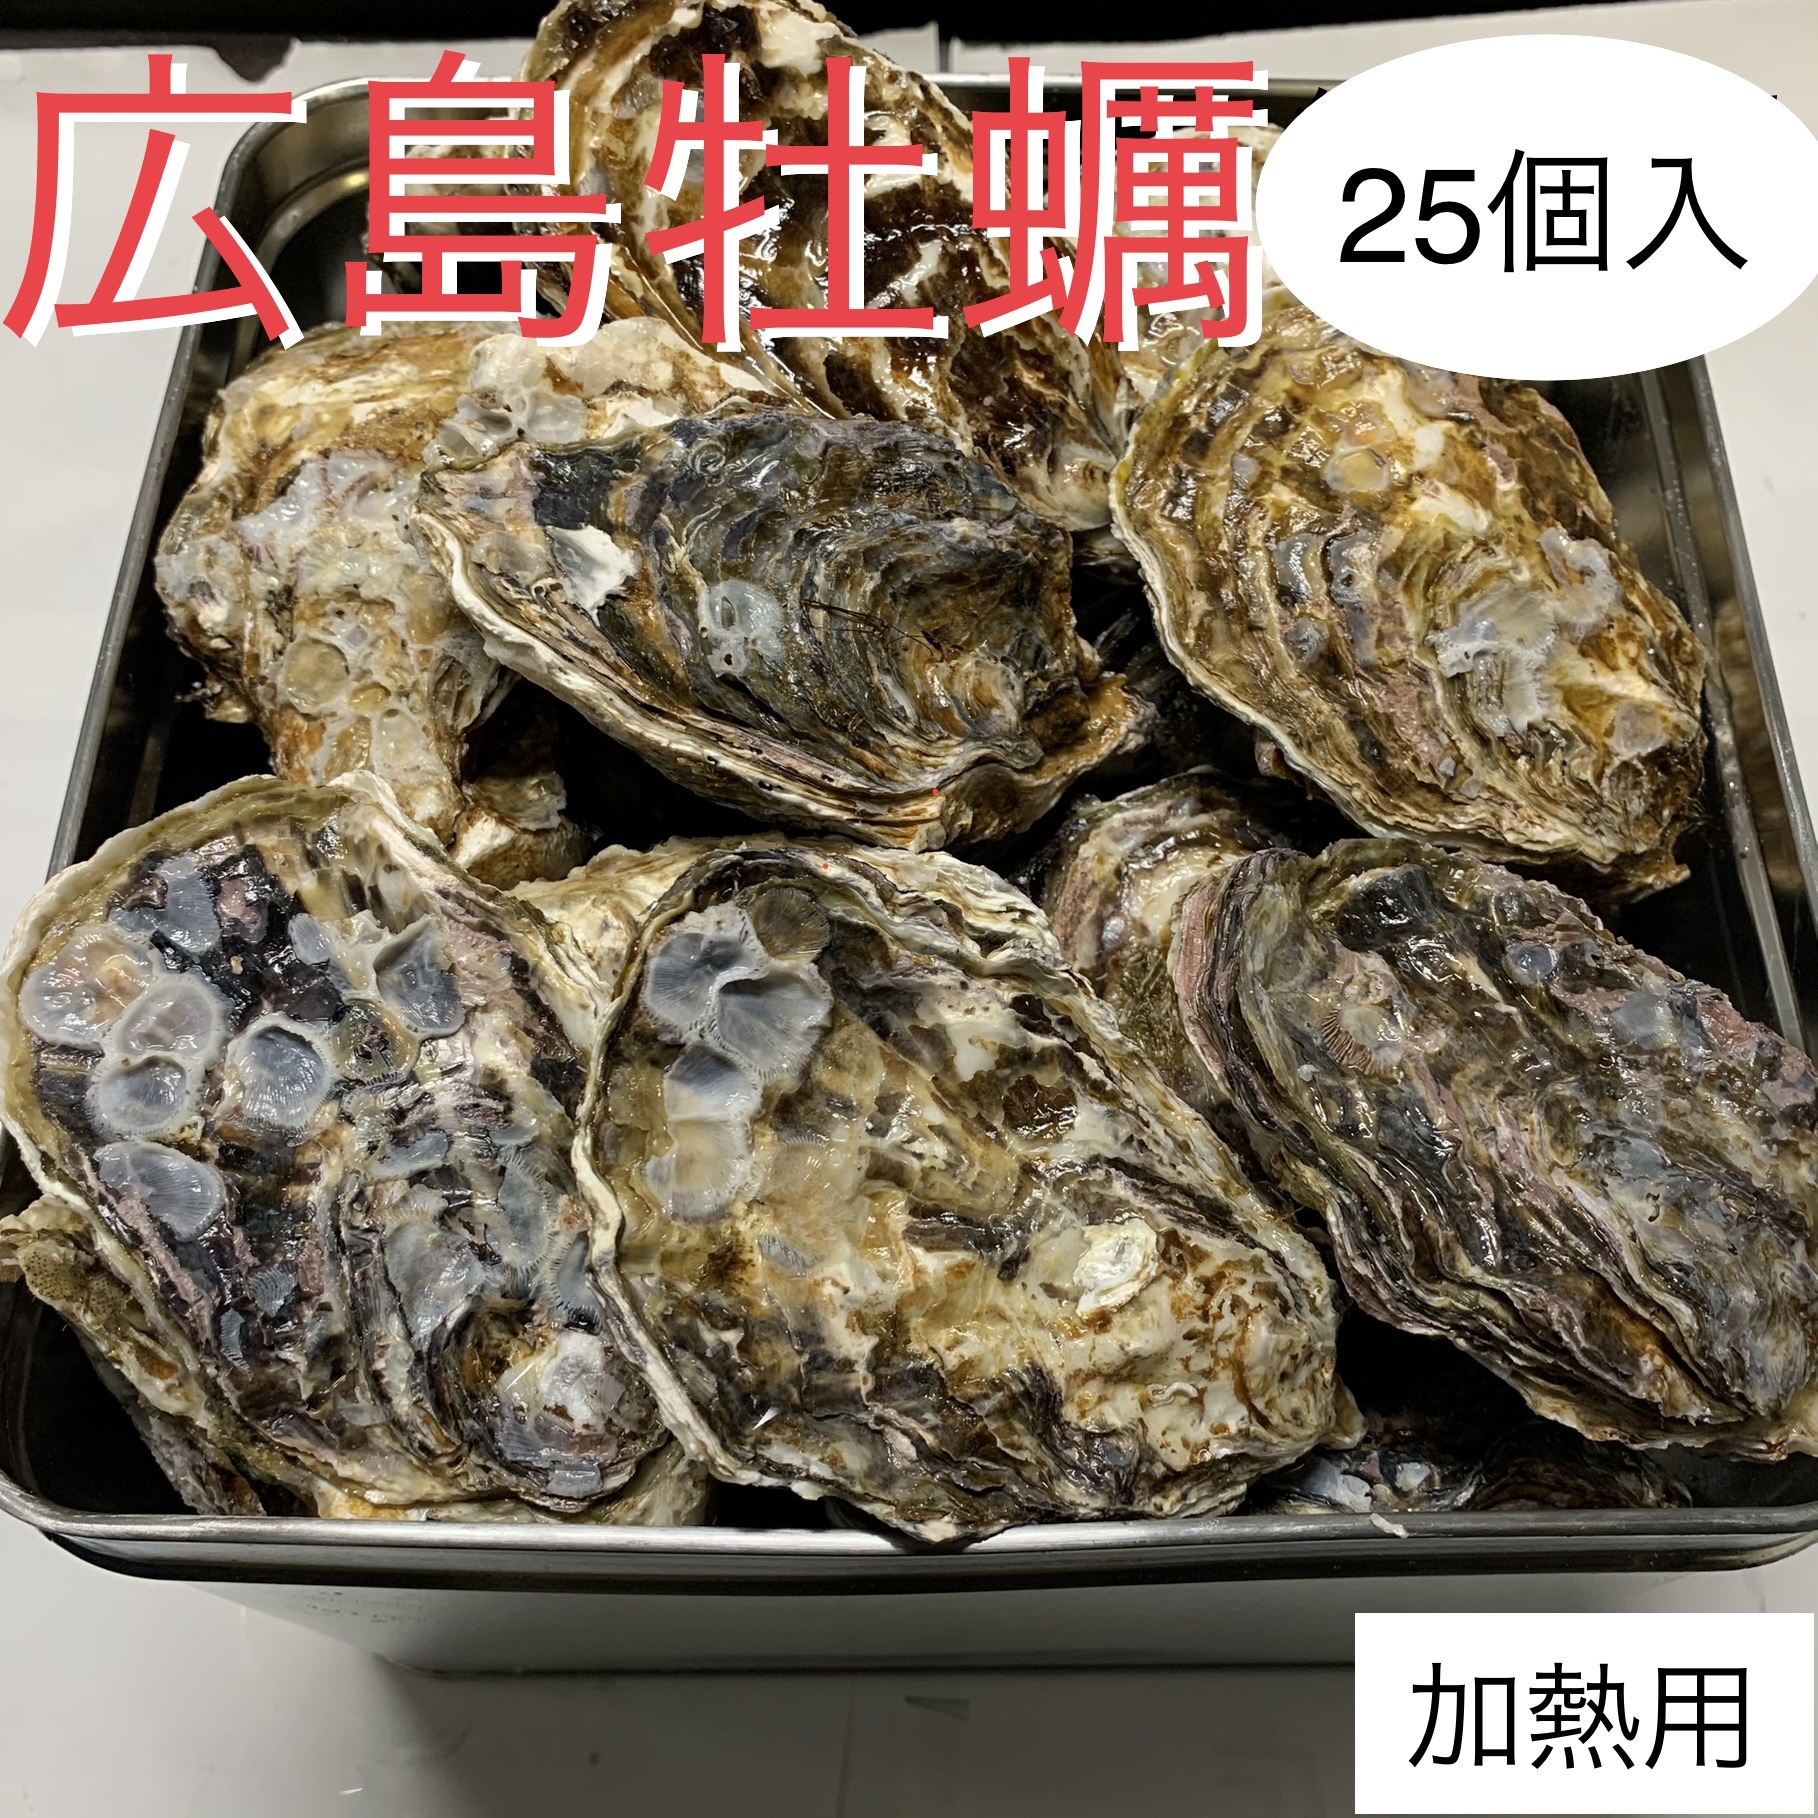 広島かき 殻付き牡蠣 半缶 カンカン焼き 25個入｜魚介類の商品詳細